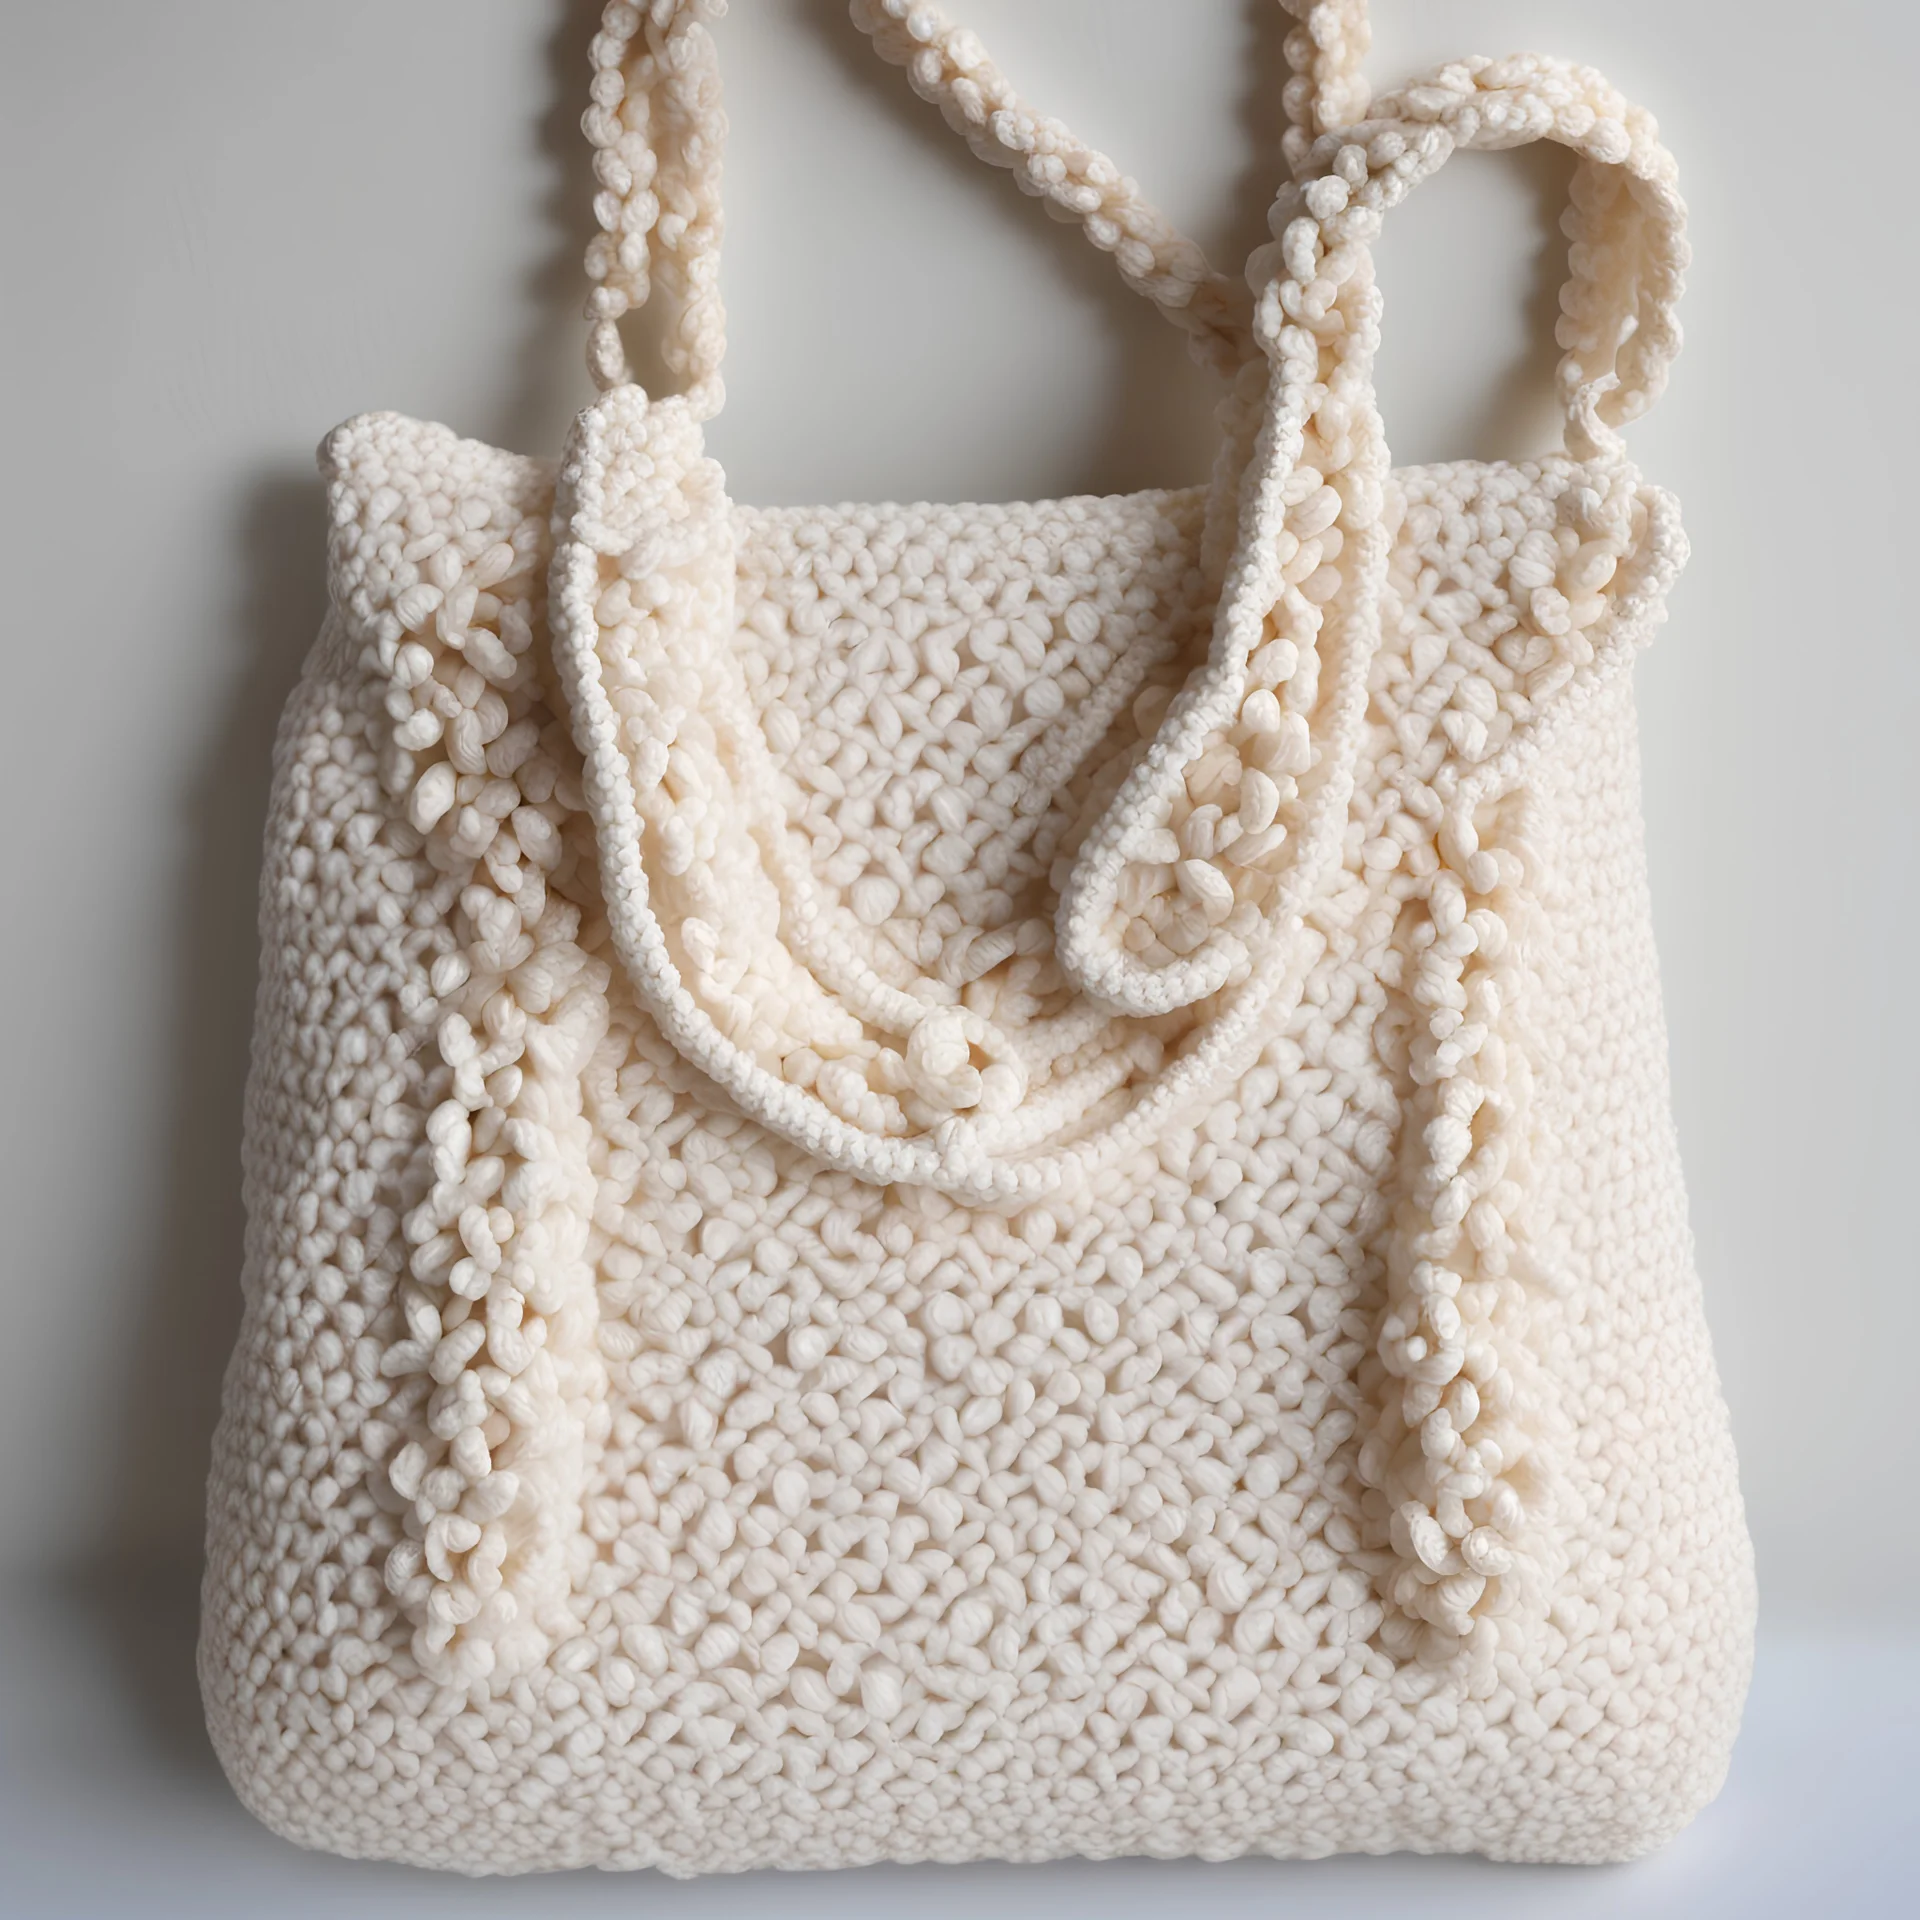 Crochet Seashell Bag / Basket 